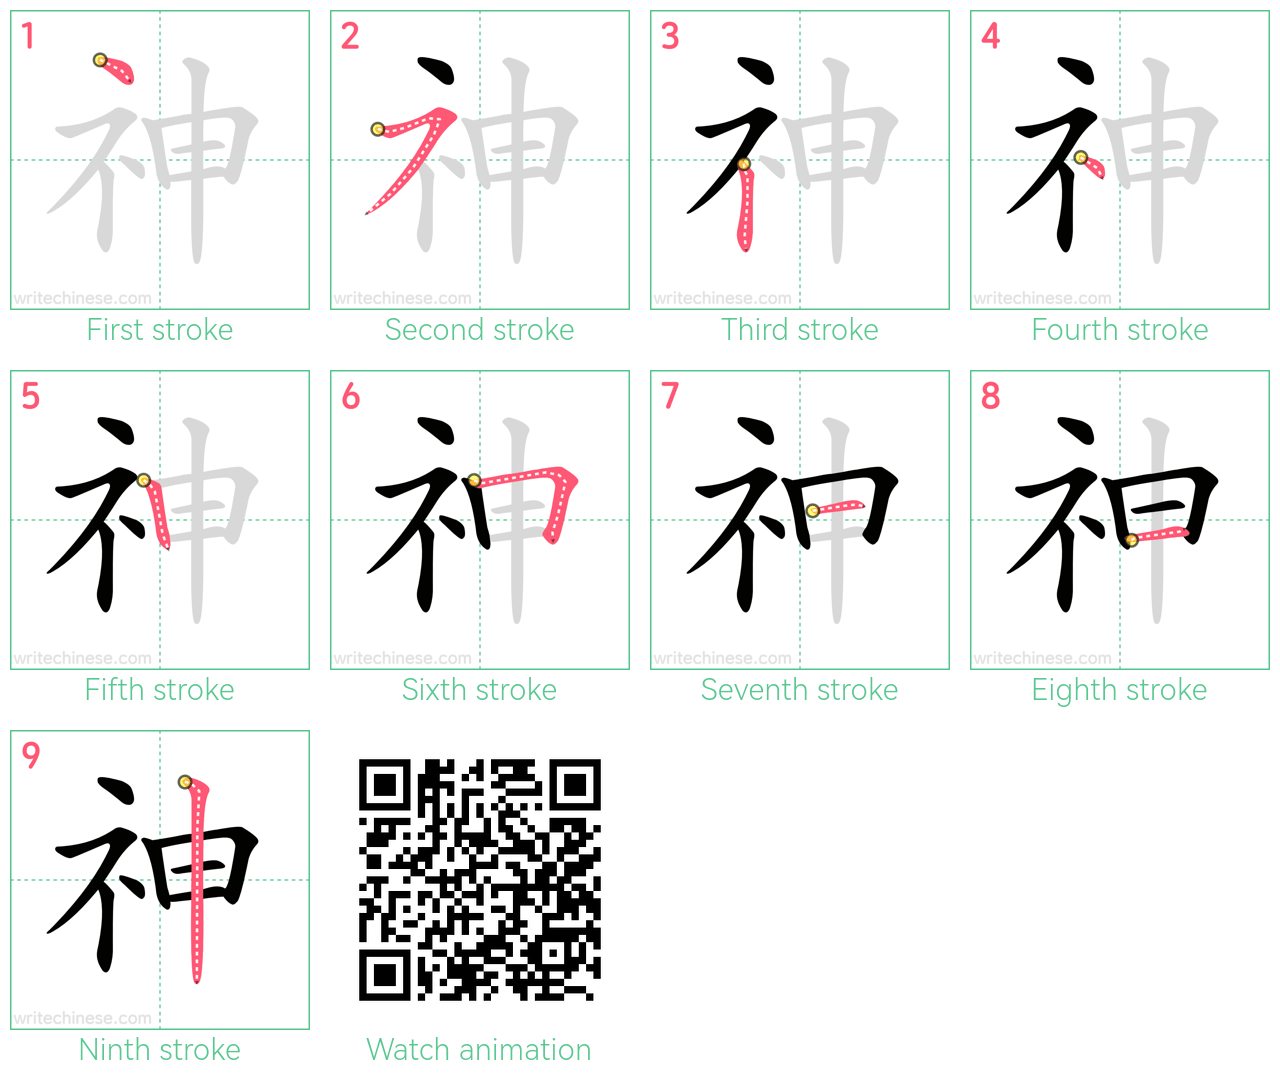 神 step-by-step stroke order diagrams